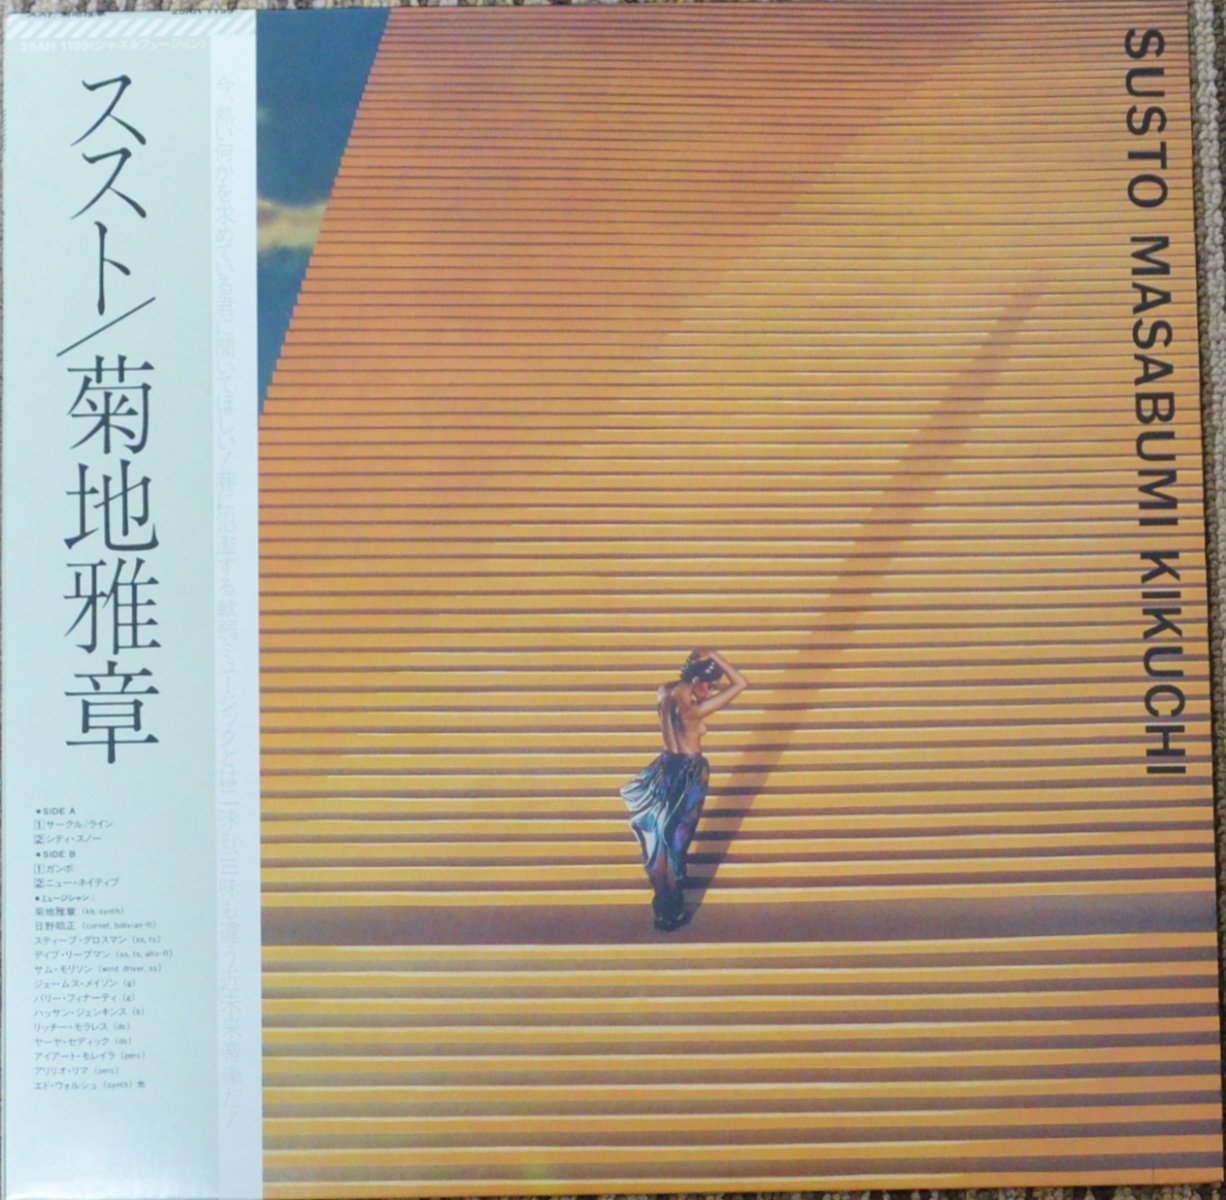 菊地雅章 MASABUMI KIKUCHI / ススト SUSTO (LP)